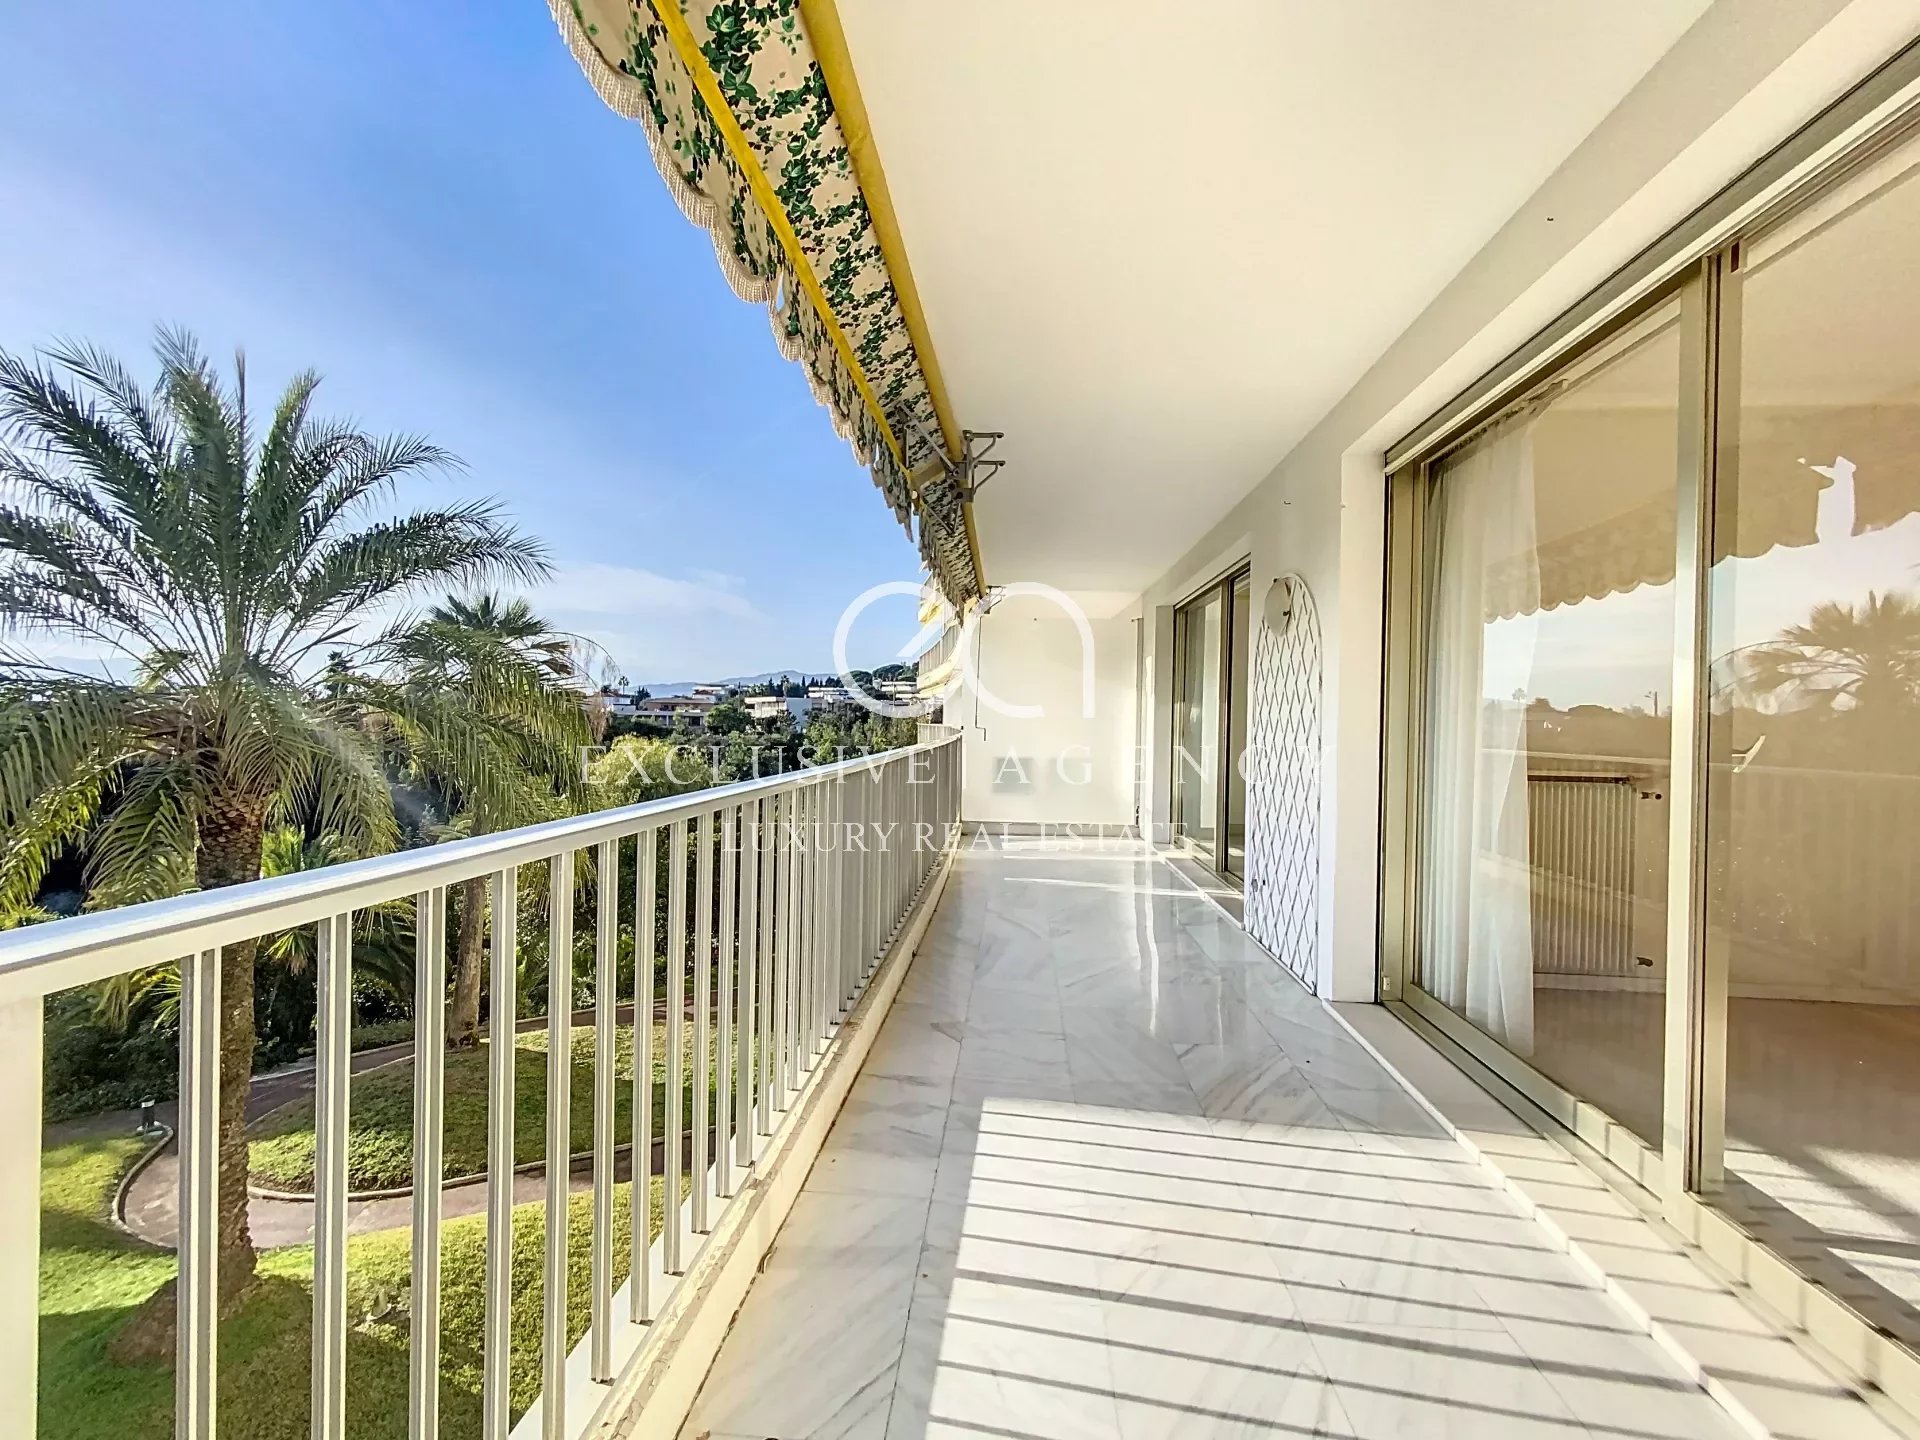 Vente Cannes 4 pièces 118m² avec terrasse et vue mer